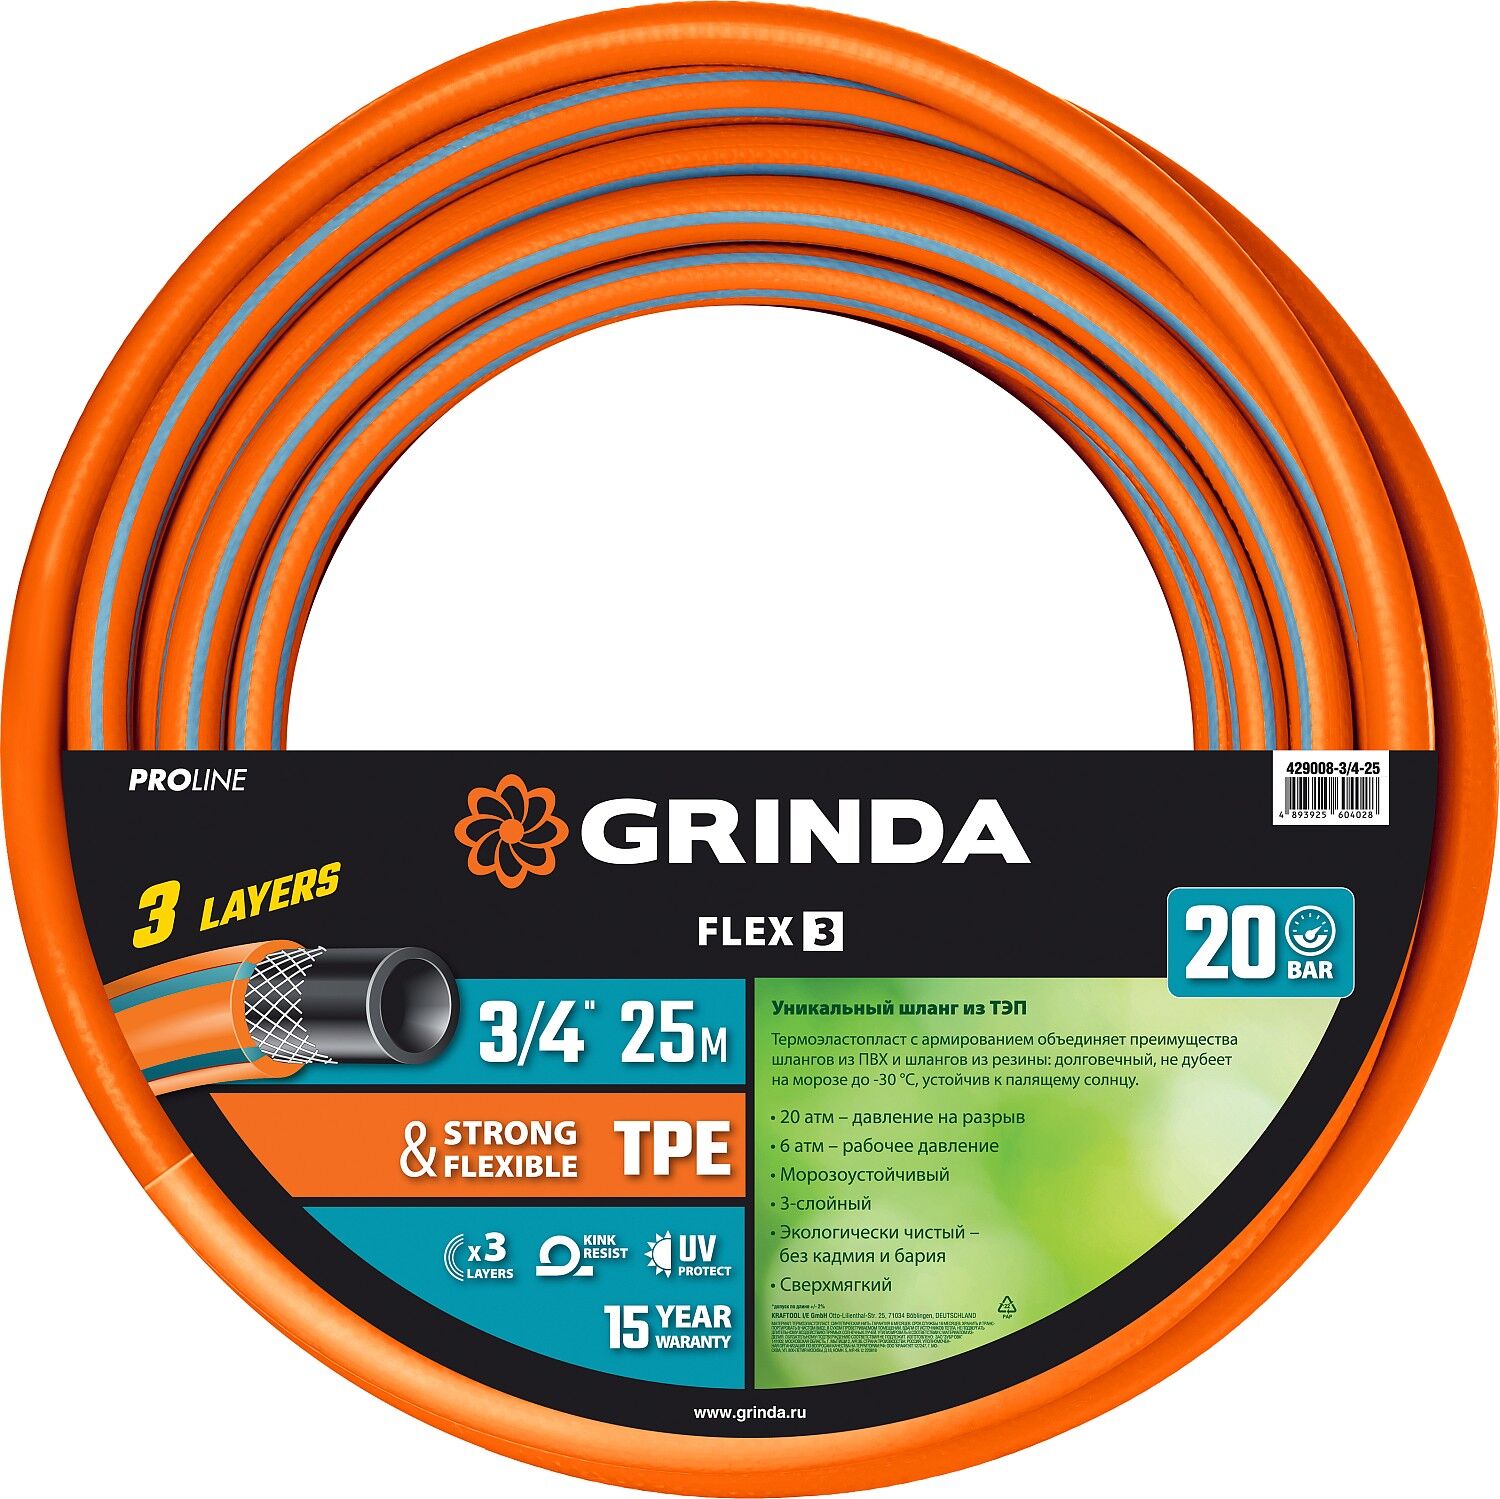 GRINDA FLEX 3, 3/4″, 25 м, 20 атм, из термоэластопласта, трёхслойный, армированный, гибкий, поливочный шланг, PROLine (4